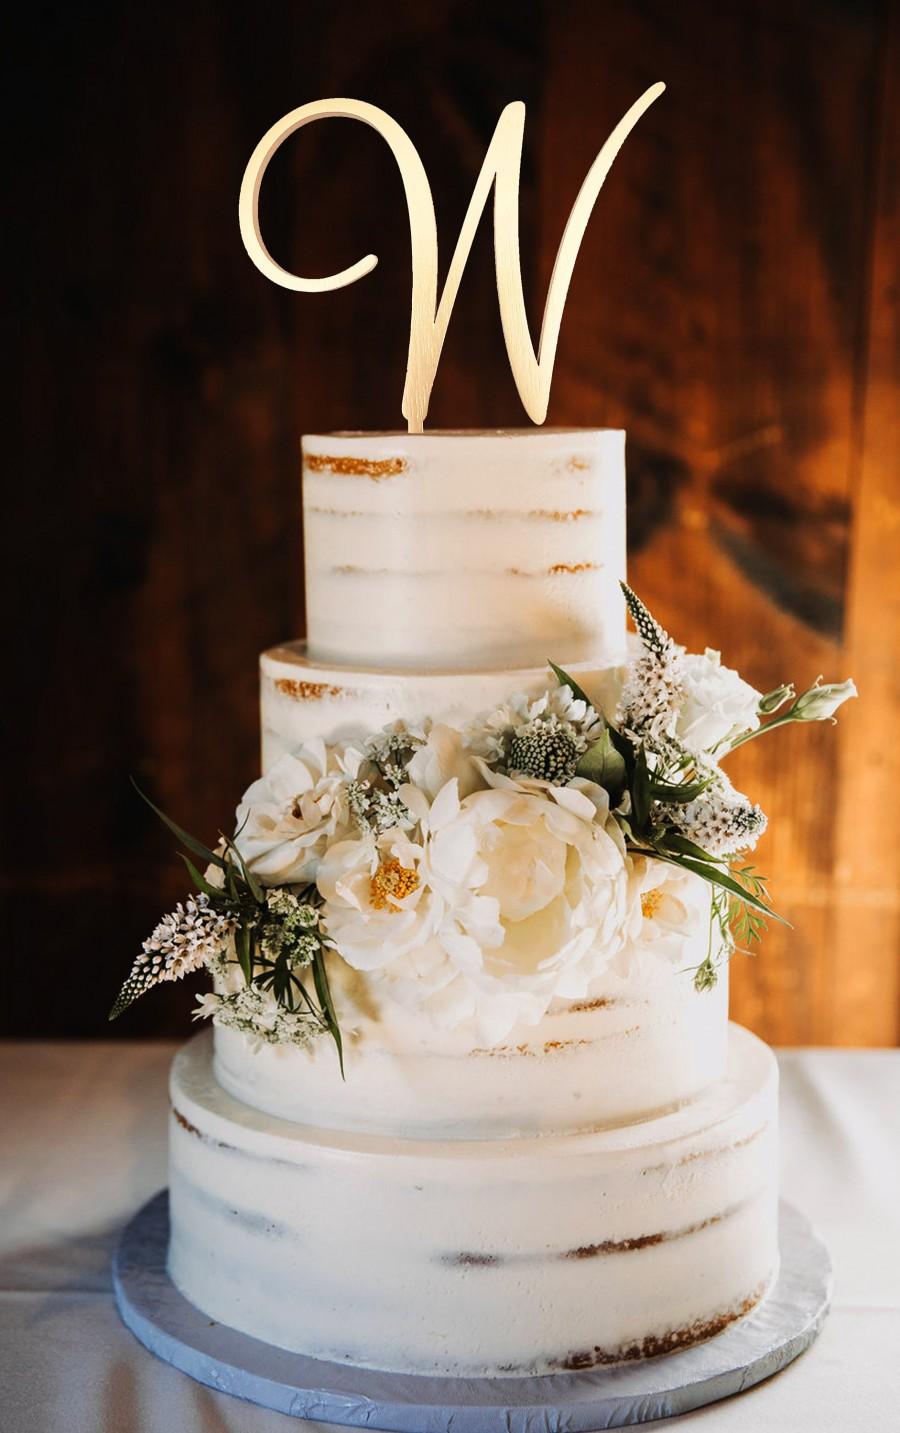 Hochzeit - W Cake Topper Wedding Cake Topper Gold Personalized Cake Topper w Custom Personalized Wedding Cake Topper initial wedding cake toppers w